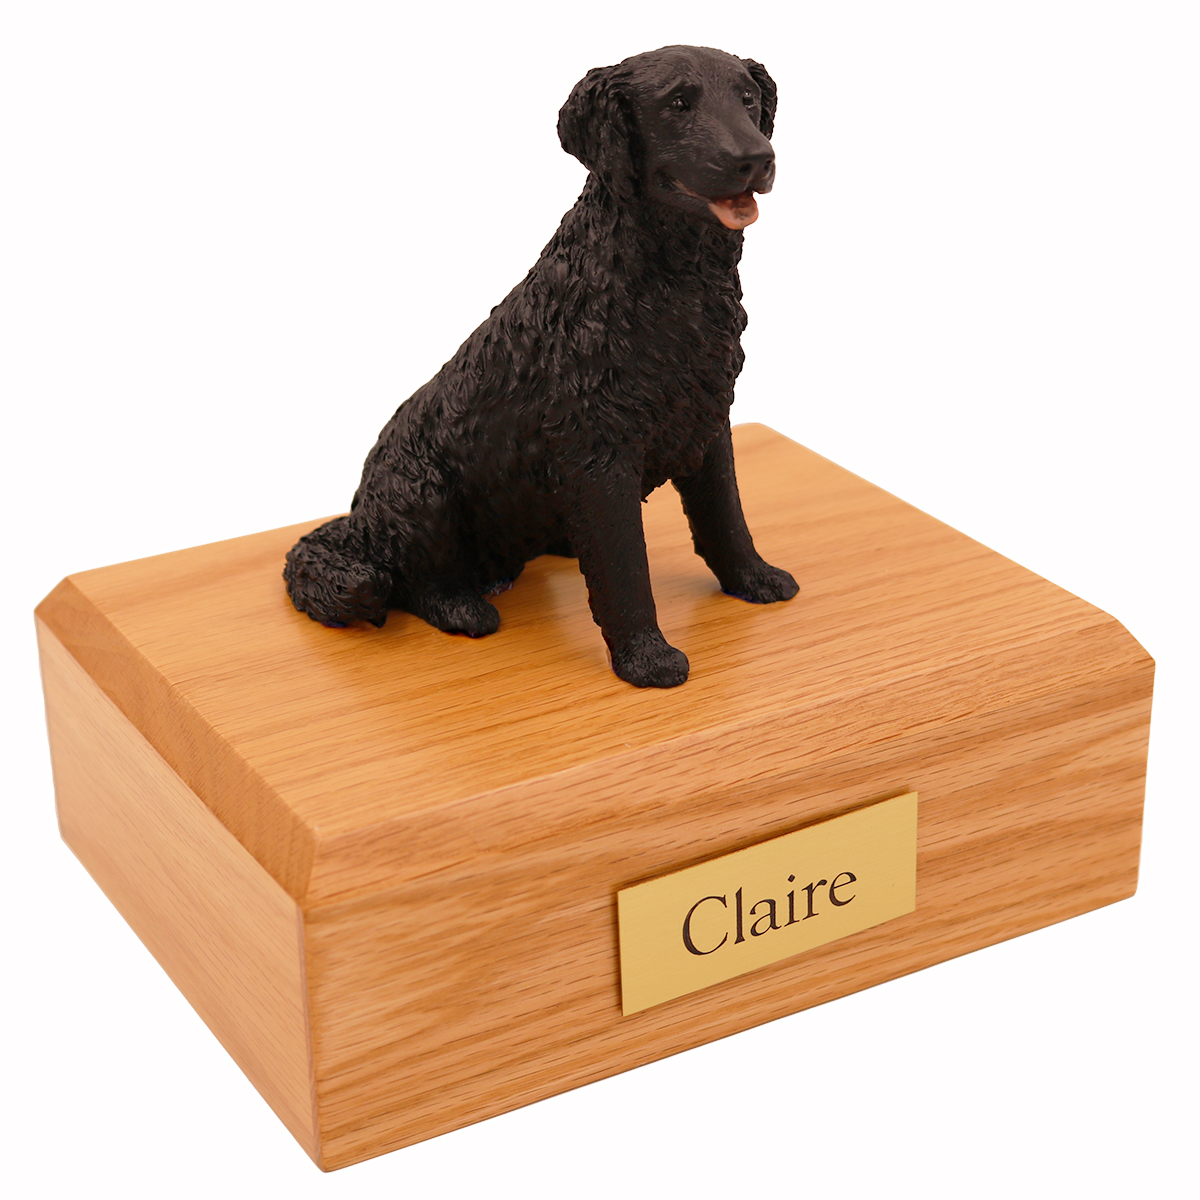 Dog, Labrador, Black, Long-haired - Figurine Urn